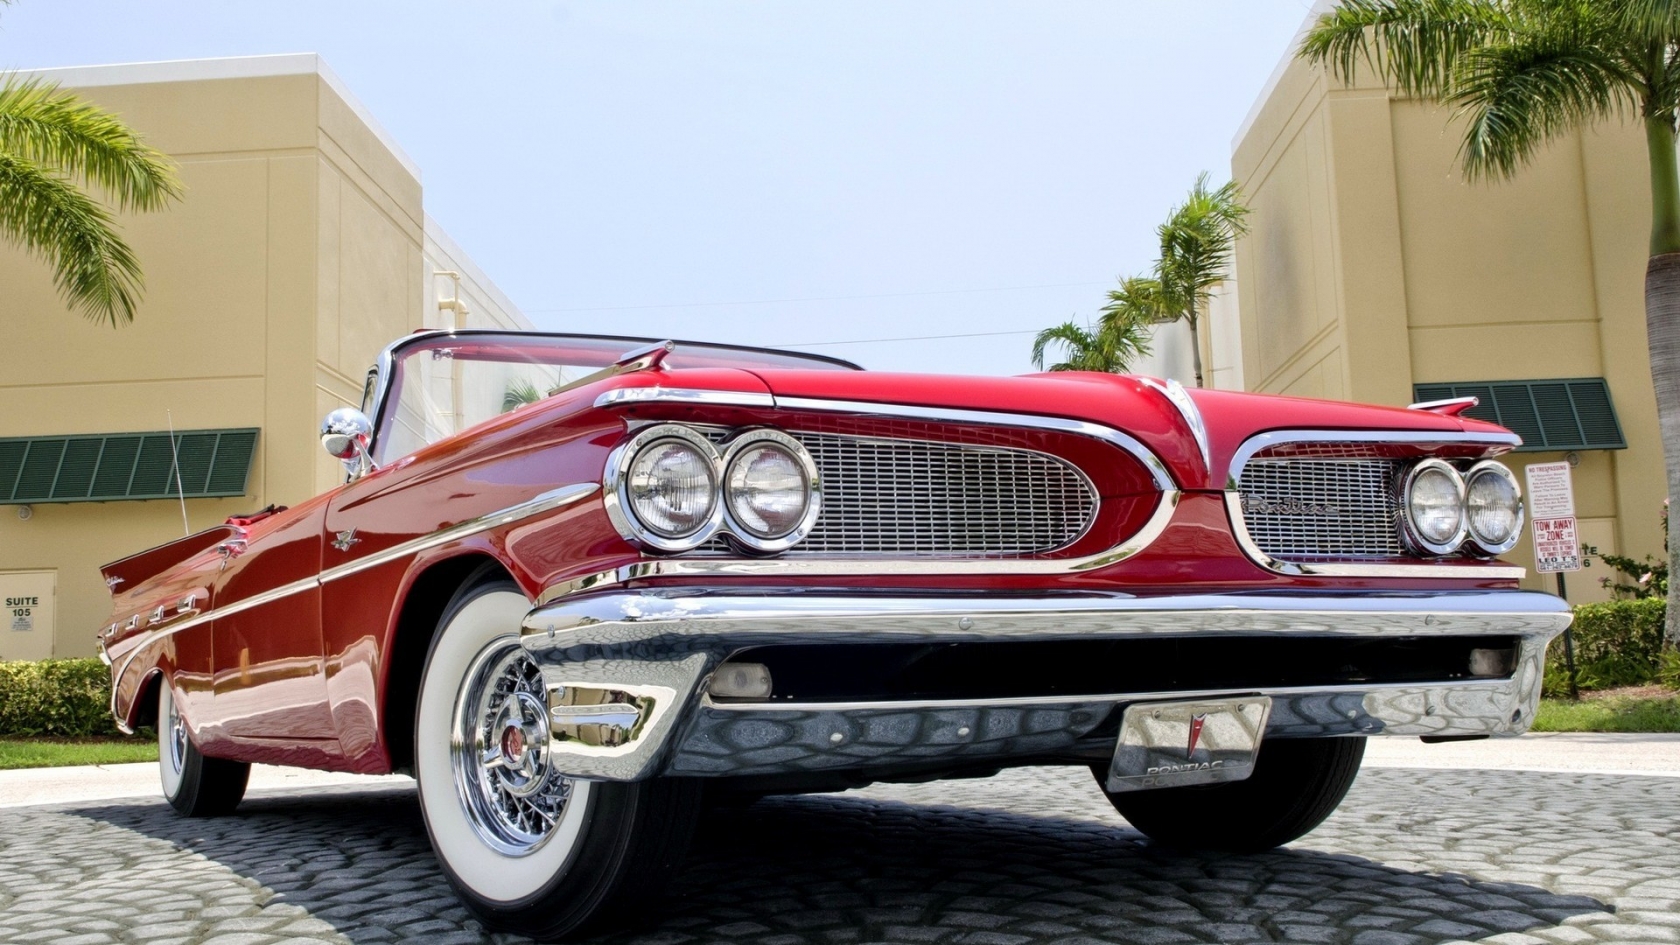 1959 Red Pontiac Cabrio for 1680 x 945 HDTV resolution